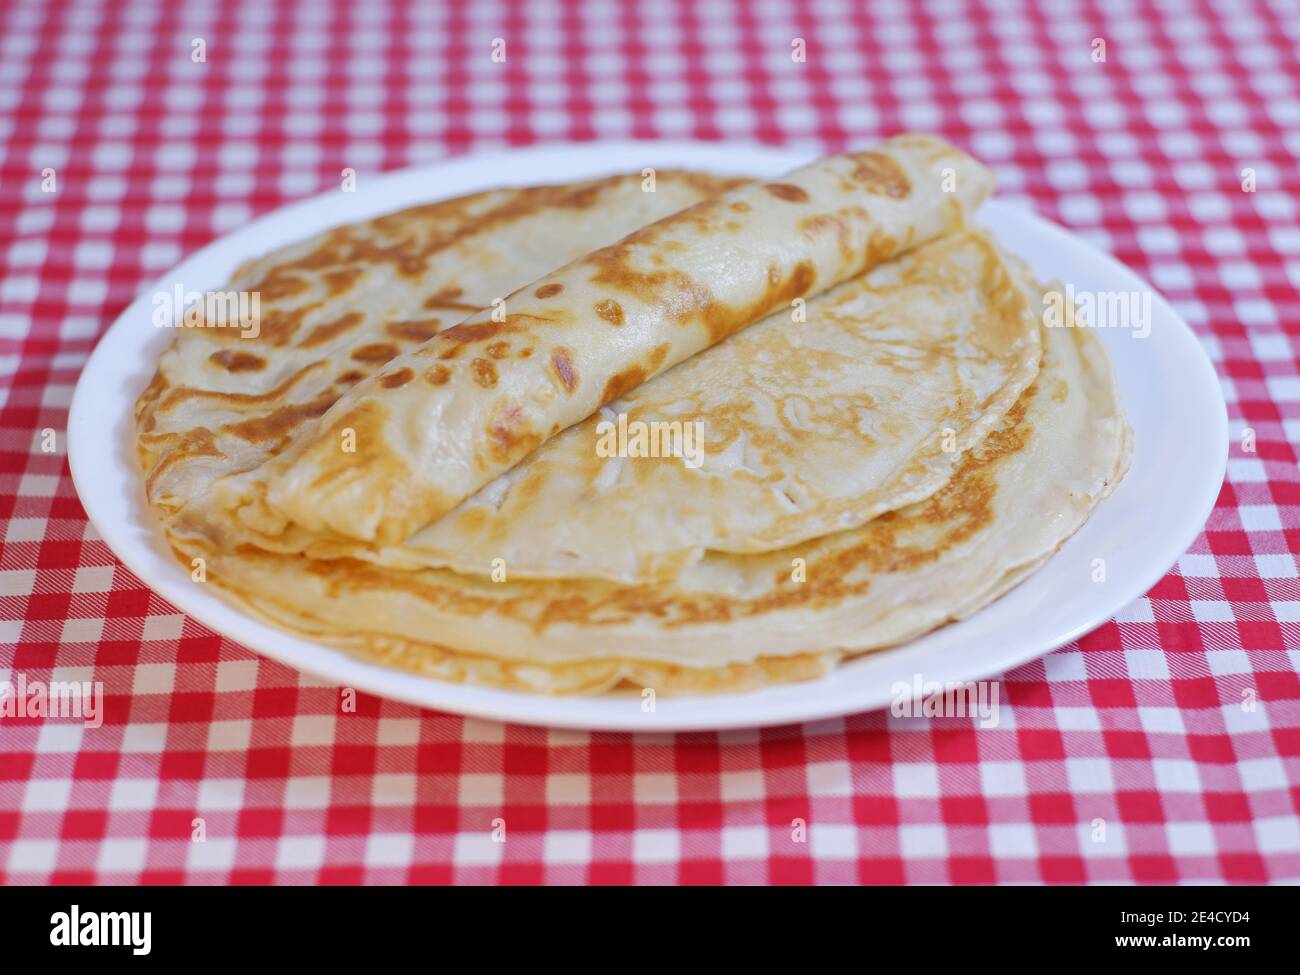 Köstliche gebratene Shrovetide-Pfannkuchen stapeln sich auf einem Teller auf einer karierten Tischdecke. Stockfoto